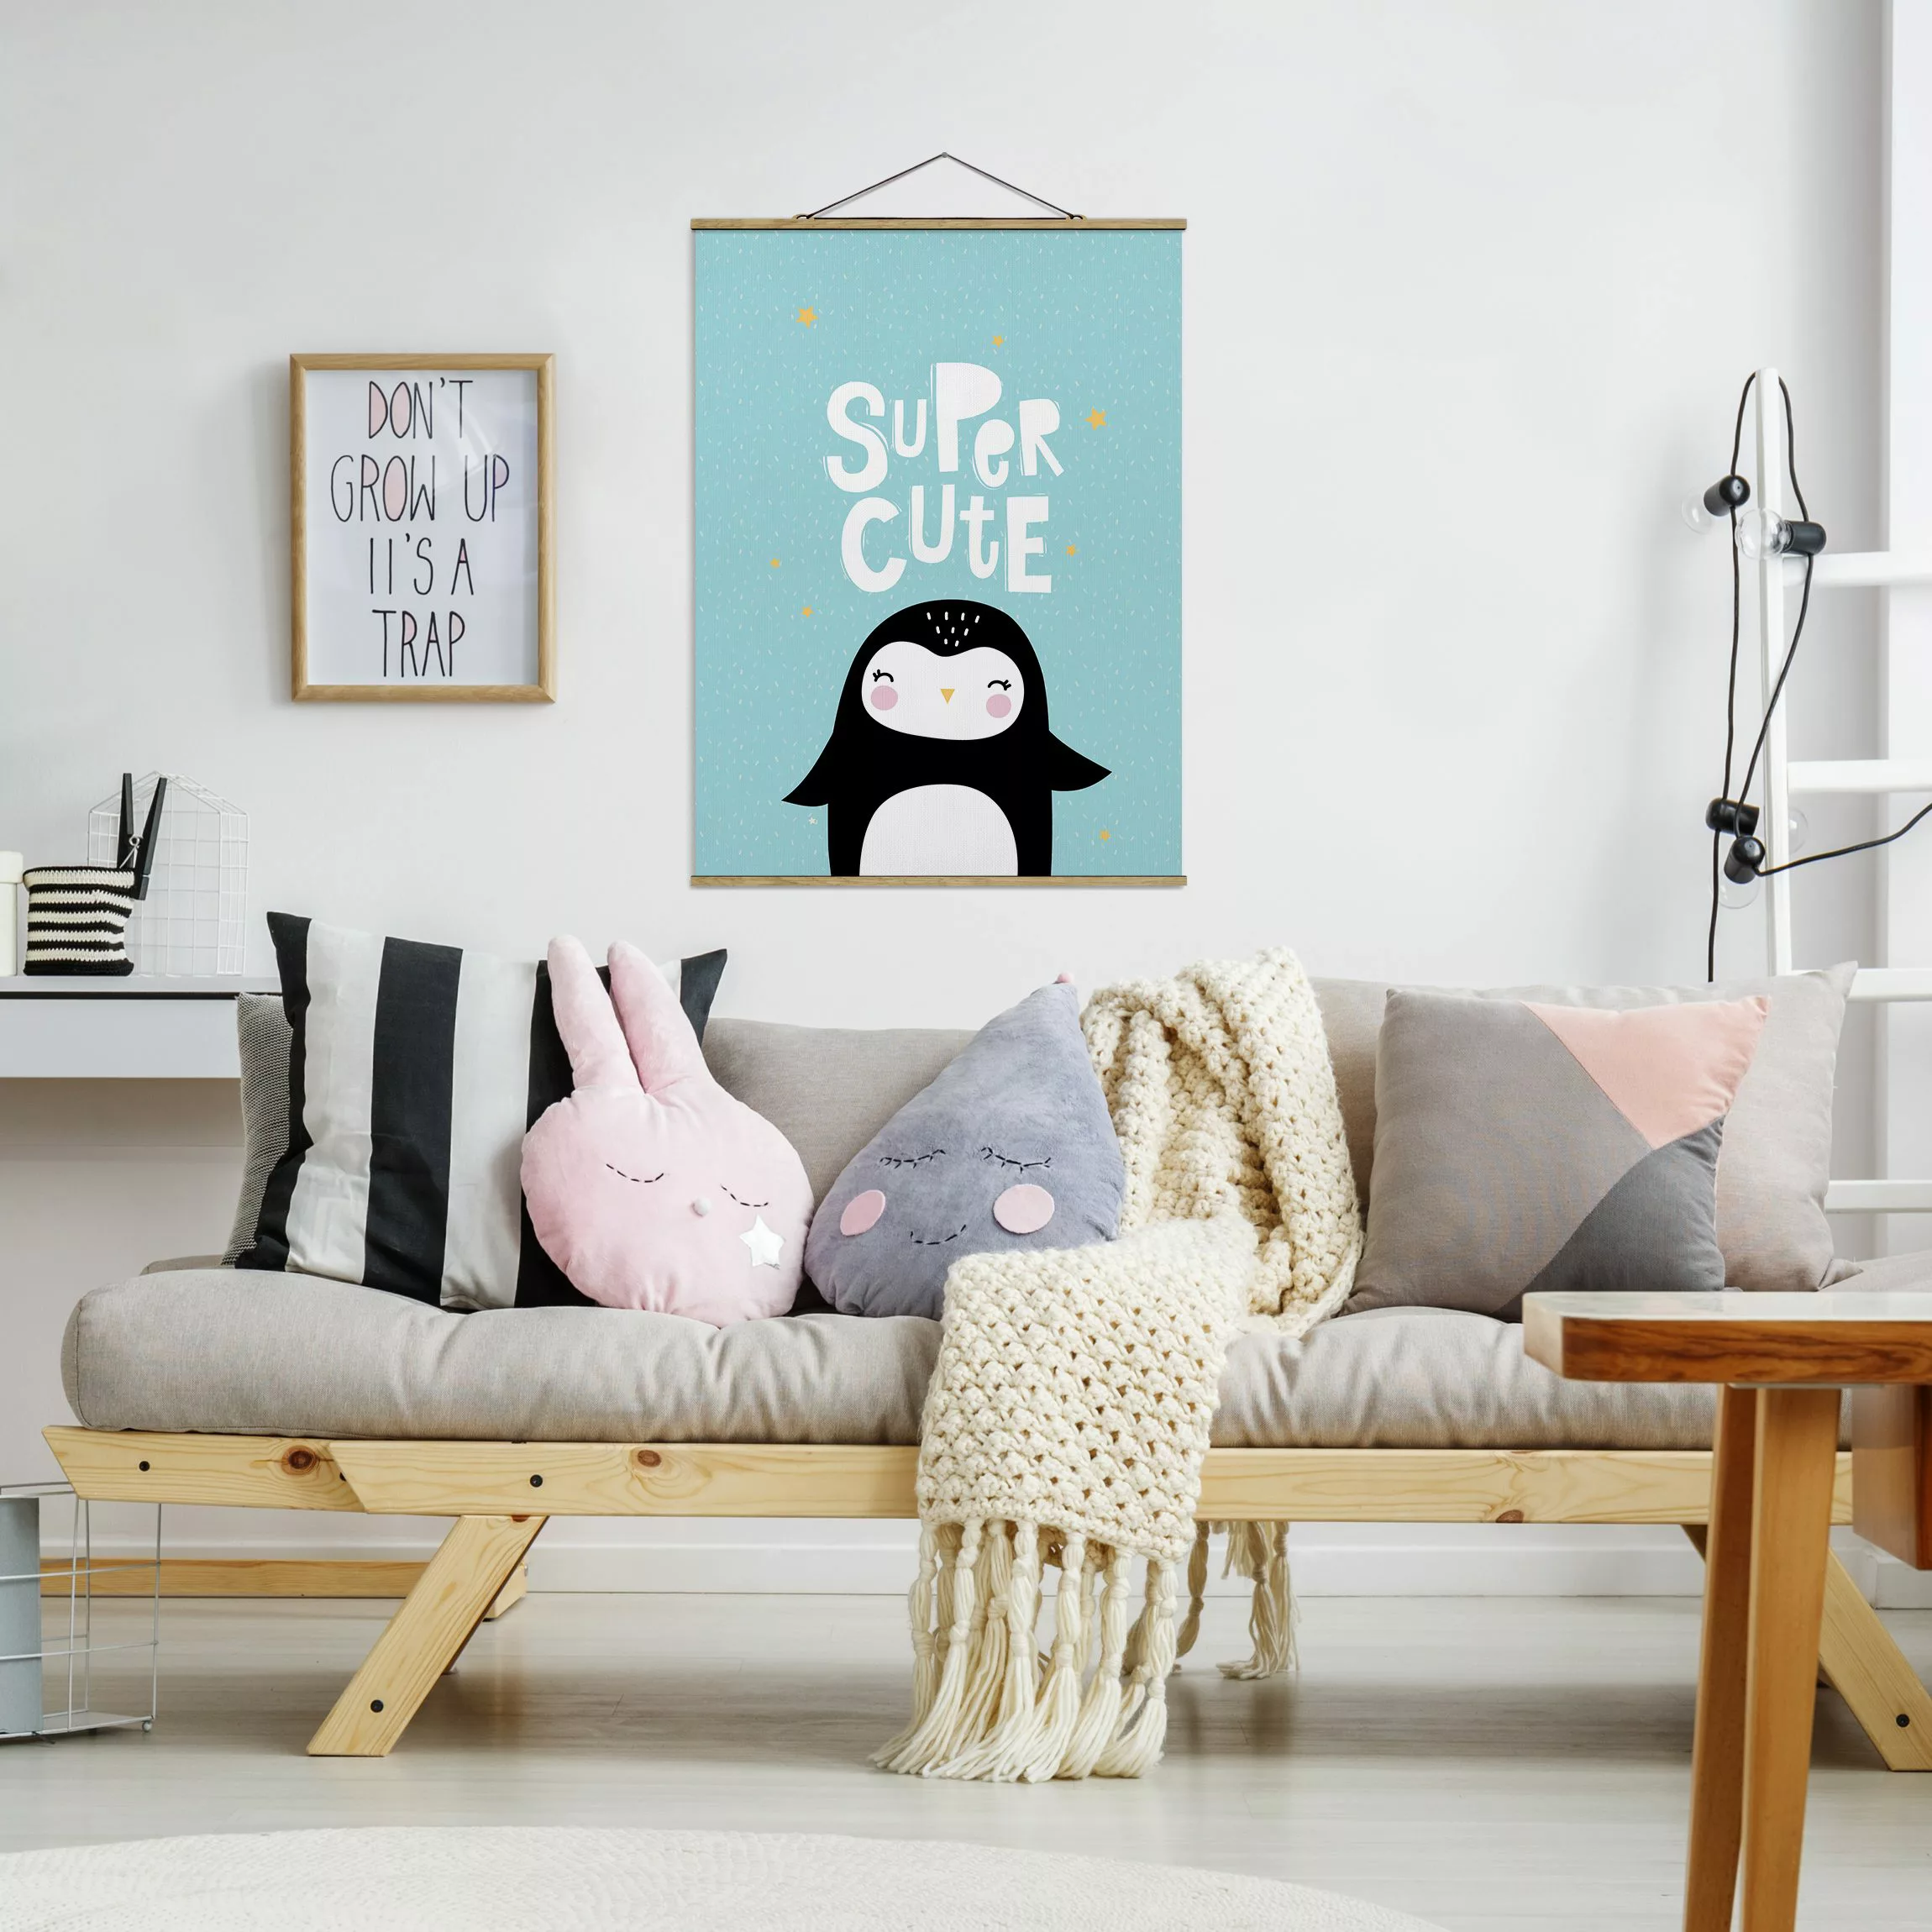 Stoffbild Tiere mit Posterleisten - Hochformat Super Cute Pinguin günstig online kaufen